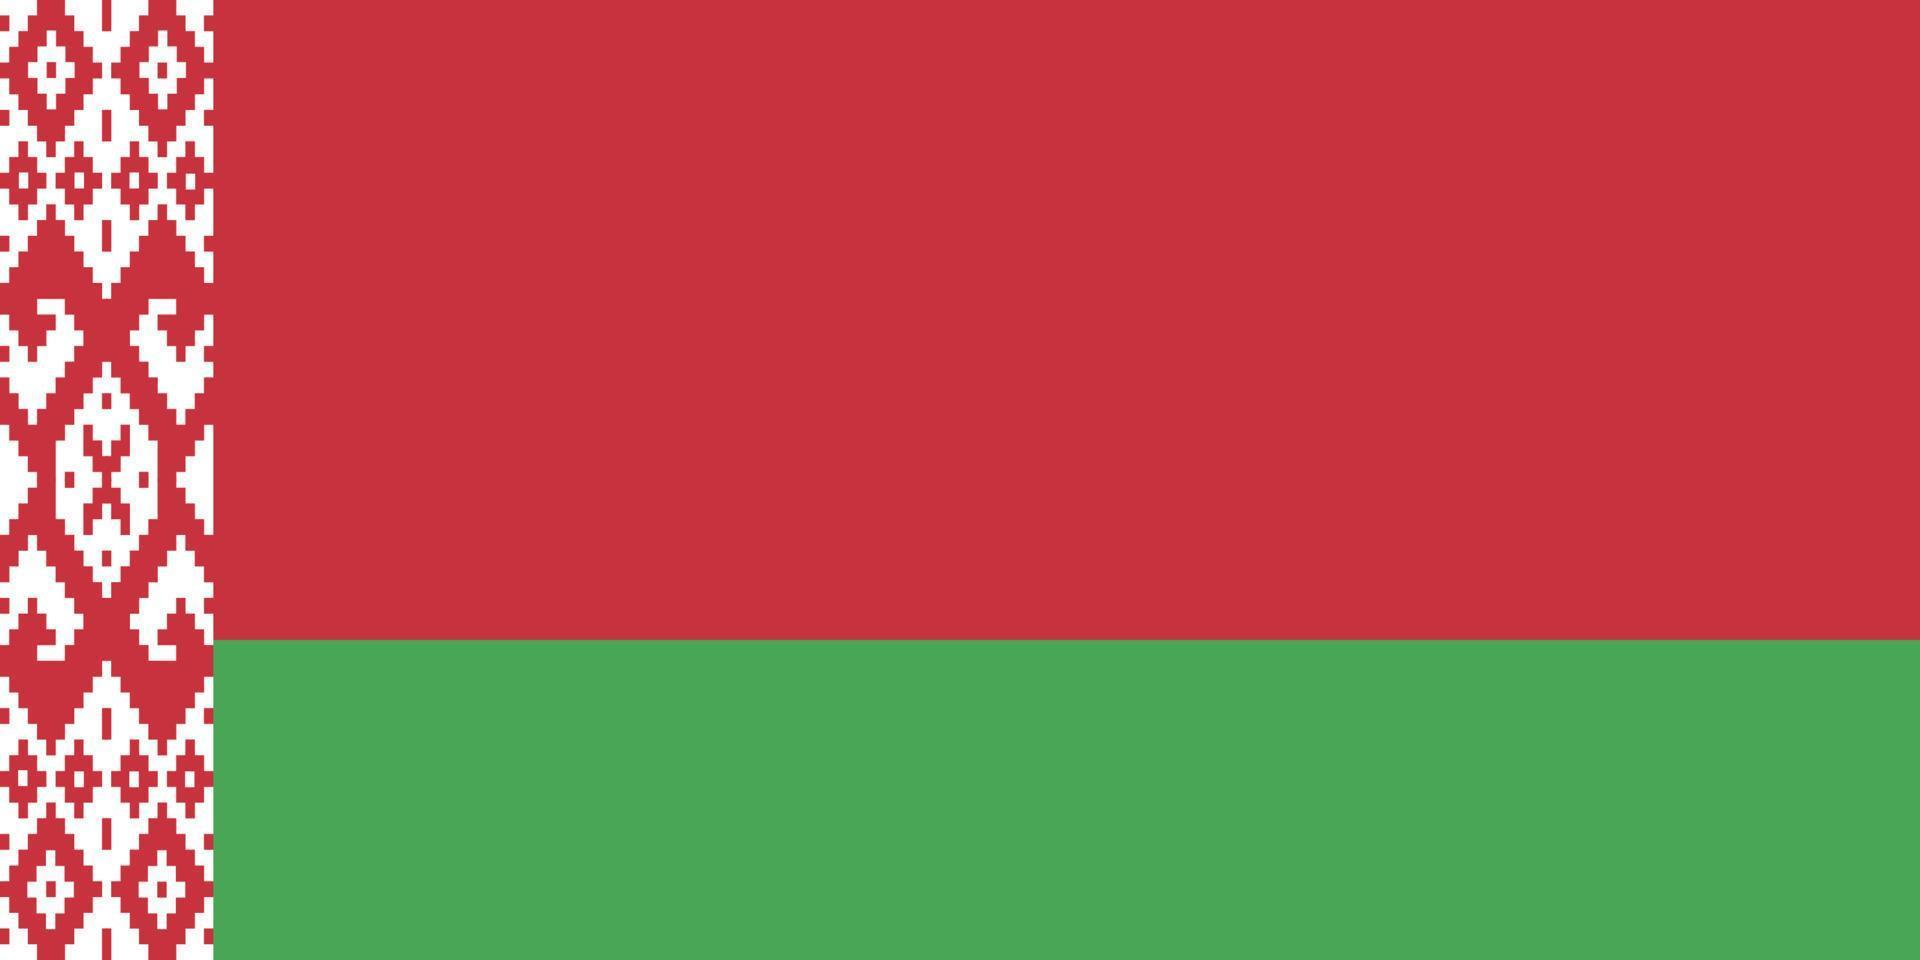 bandiera bielorussia vettore illustrazione simbolo nazionale nazione icona. la libertà nazione bandiera bielorussia indipendenza patriottismo celebrazione design governo internazionale ufficiale simbolico oggetto cultura